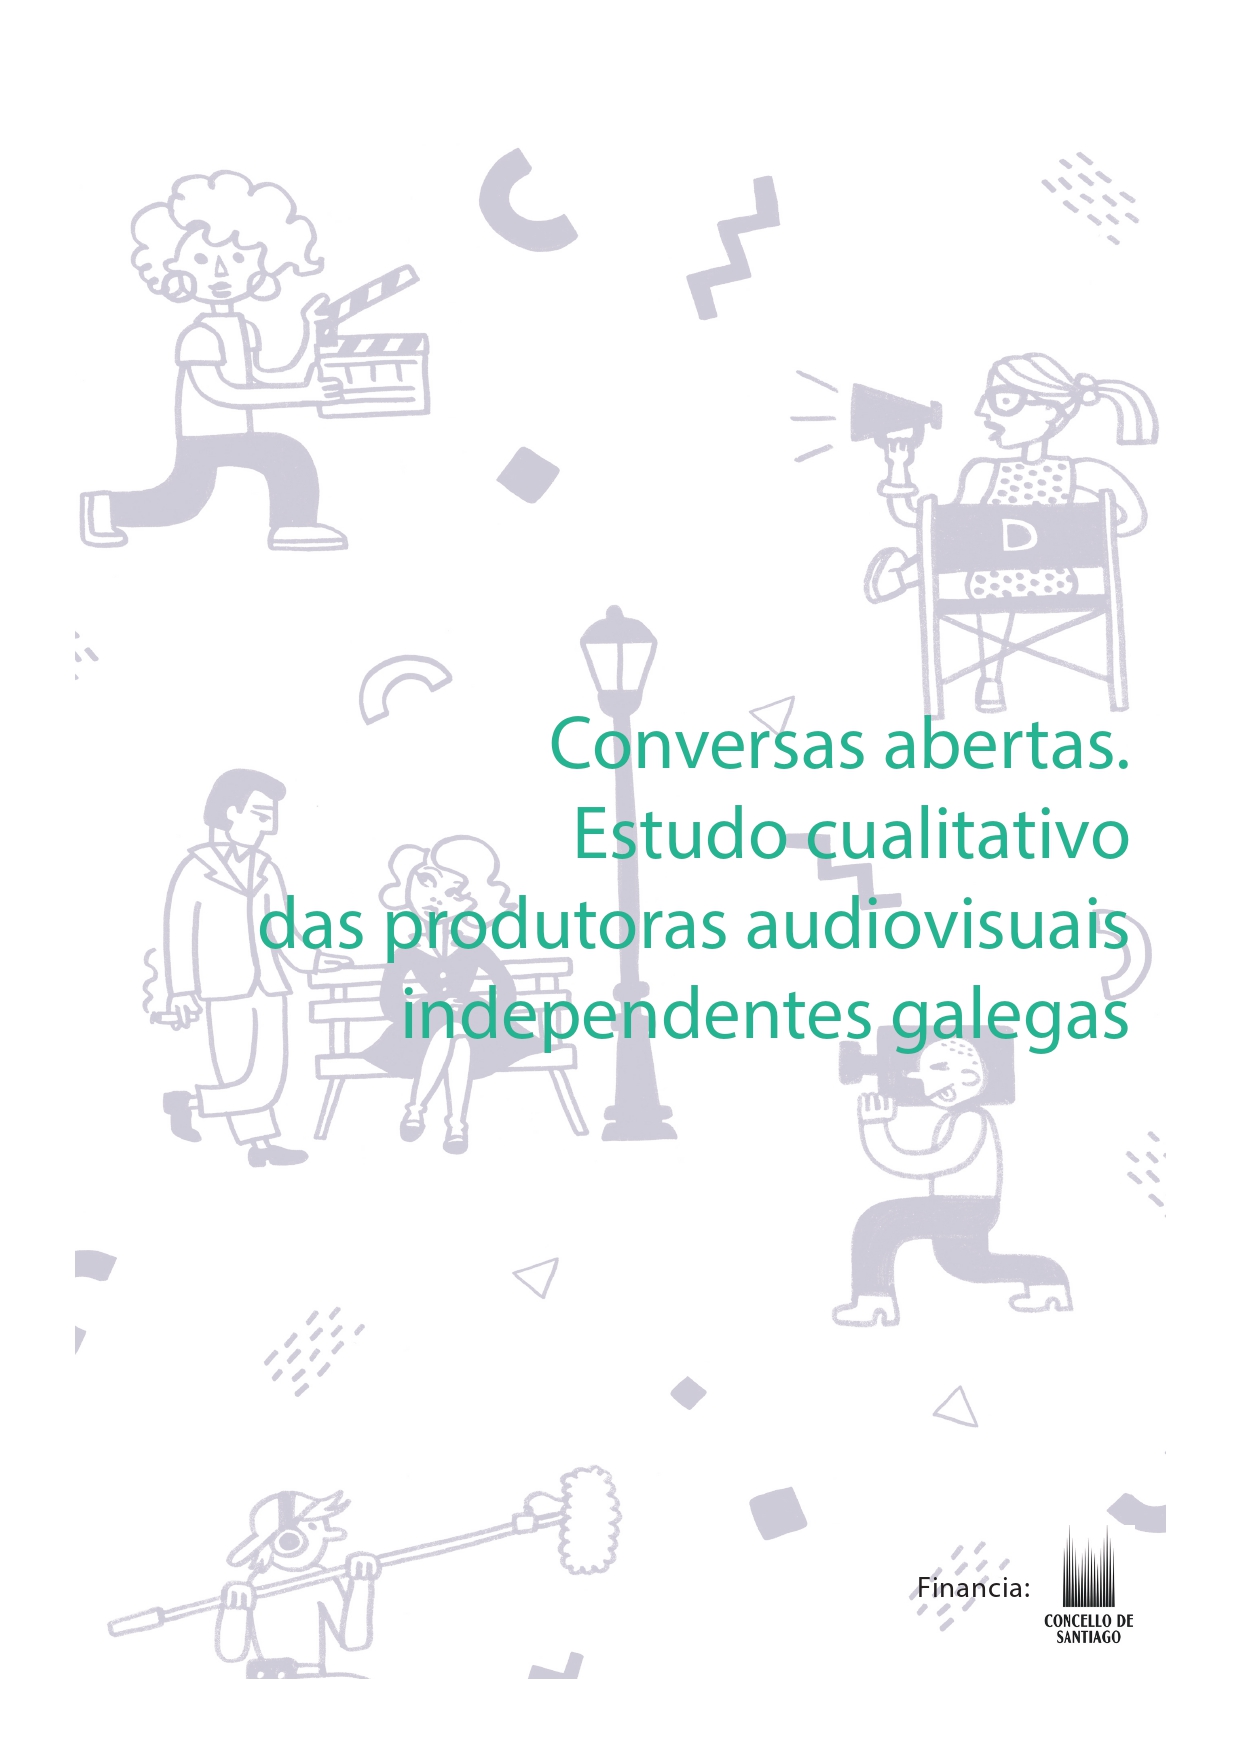 Agapi presenta unha nova publicación co apoio do Concello de Santiago de Compostela ‘Conversas abertas. Estudo cualitativo de produtoras audiovisuais galegas’